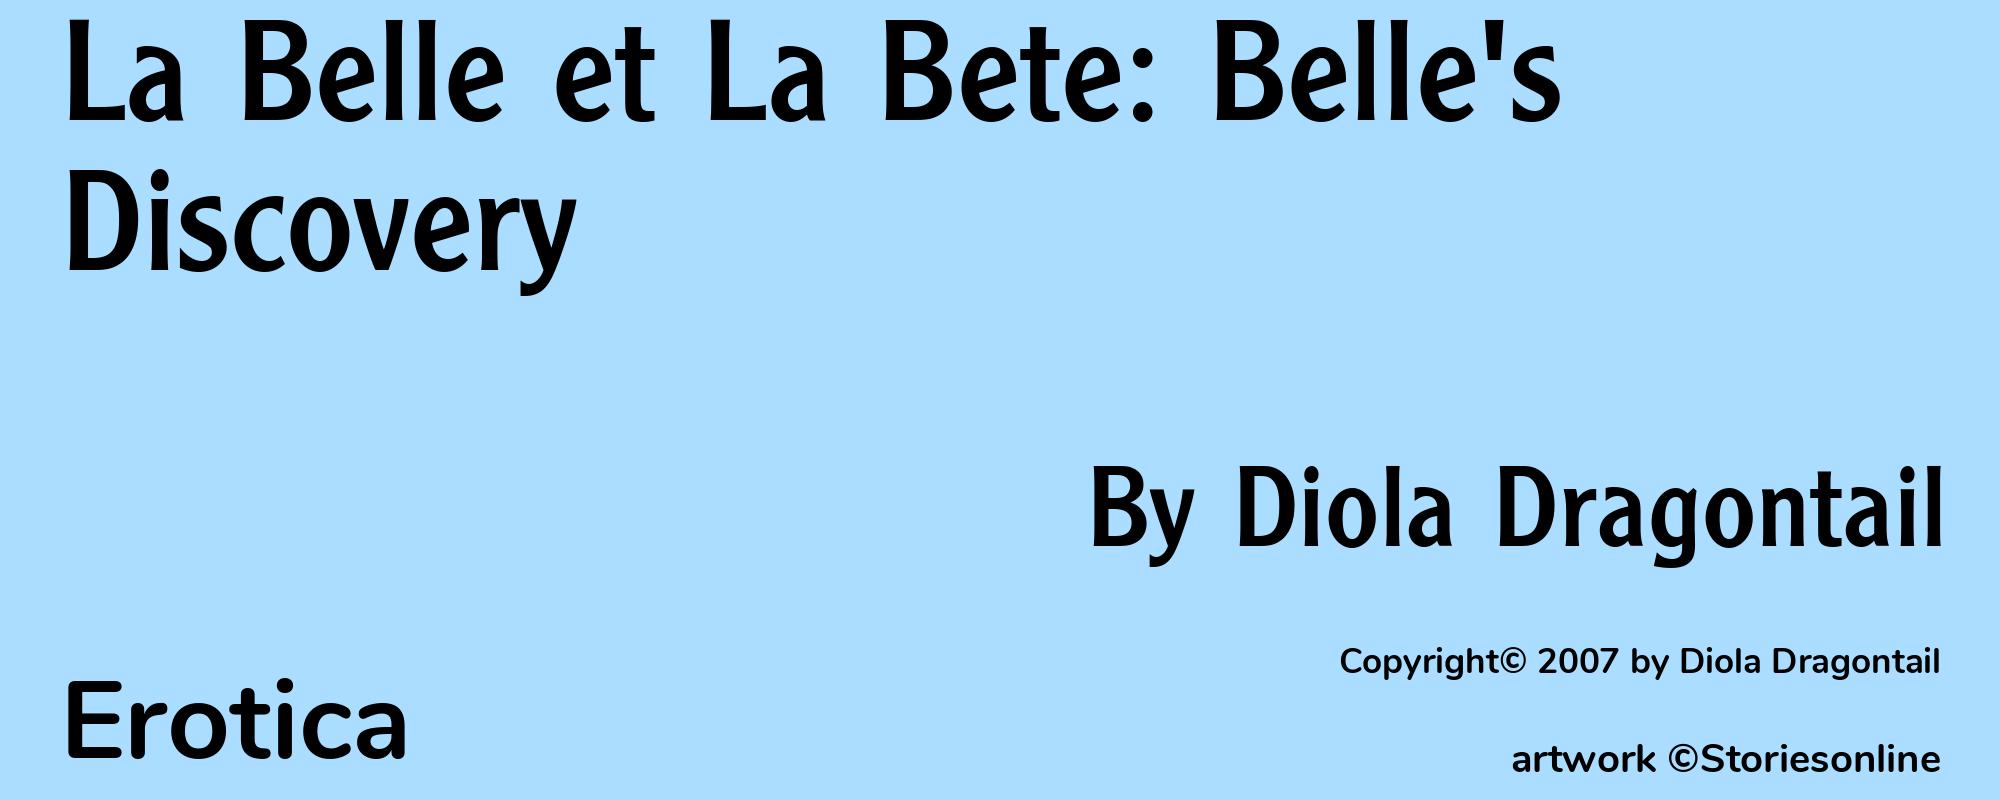 La Belle et La Bete: Belle's Discovery - Cover